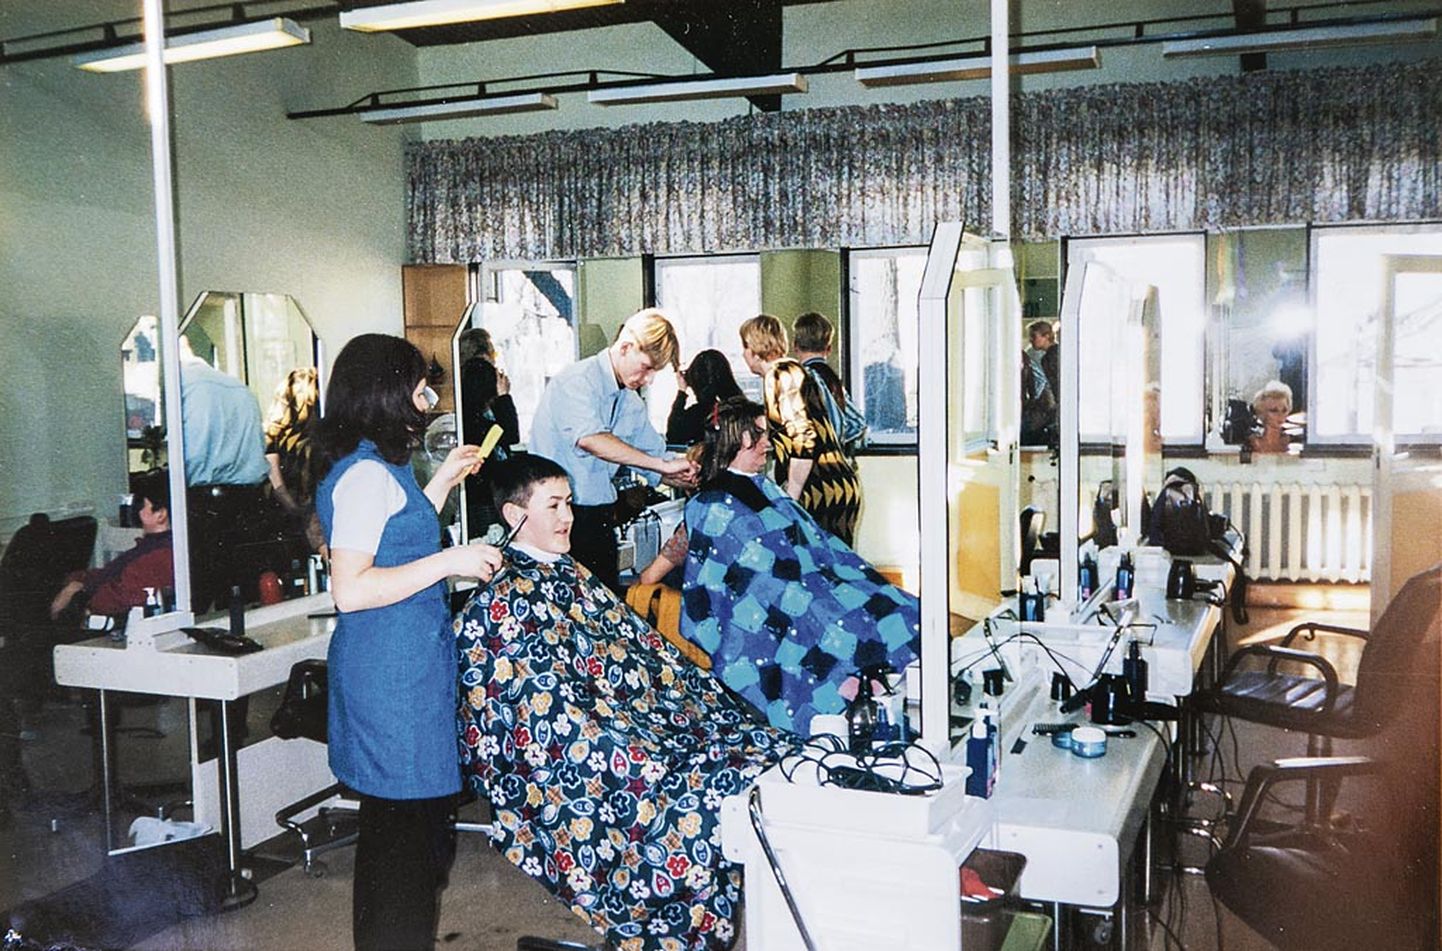 Huvilisi uuele juuksuri erialale jagus. Õpinguid alustas 1997. aastal 17 noort, kelle seas neli noormeest.